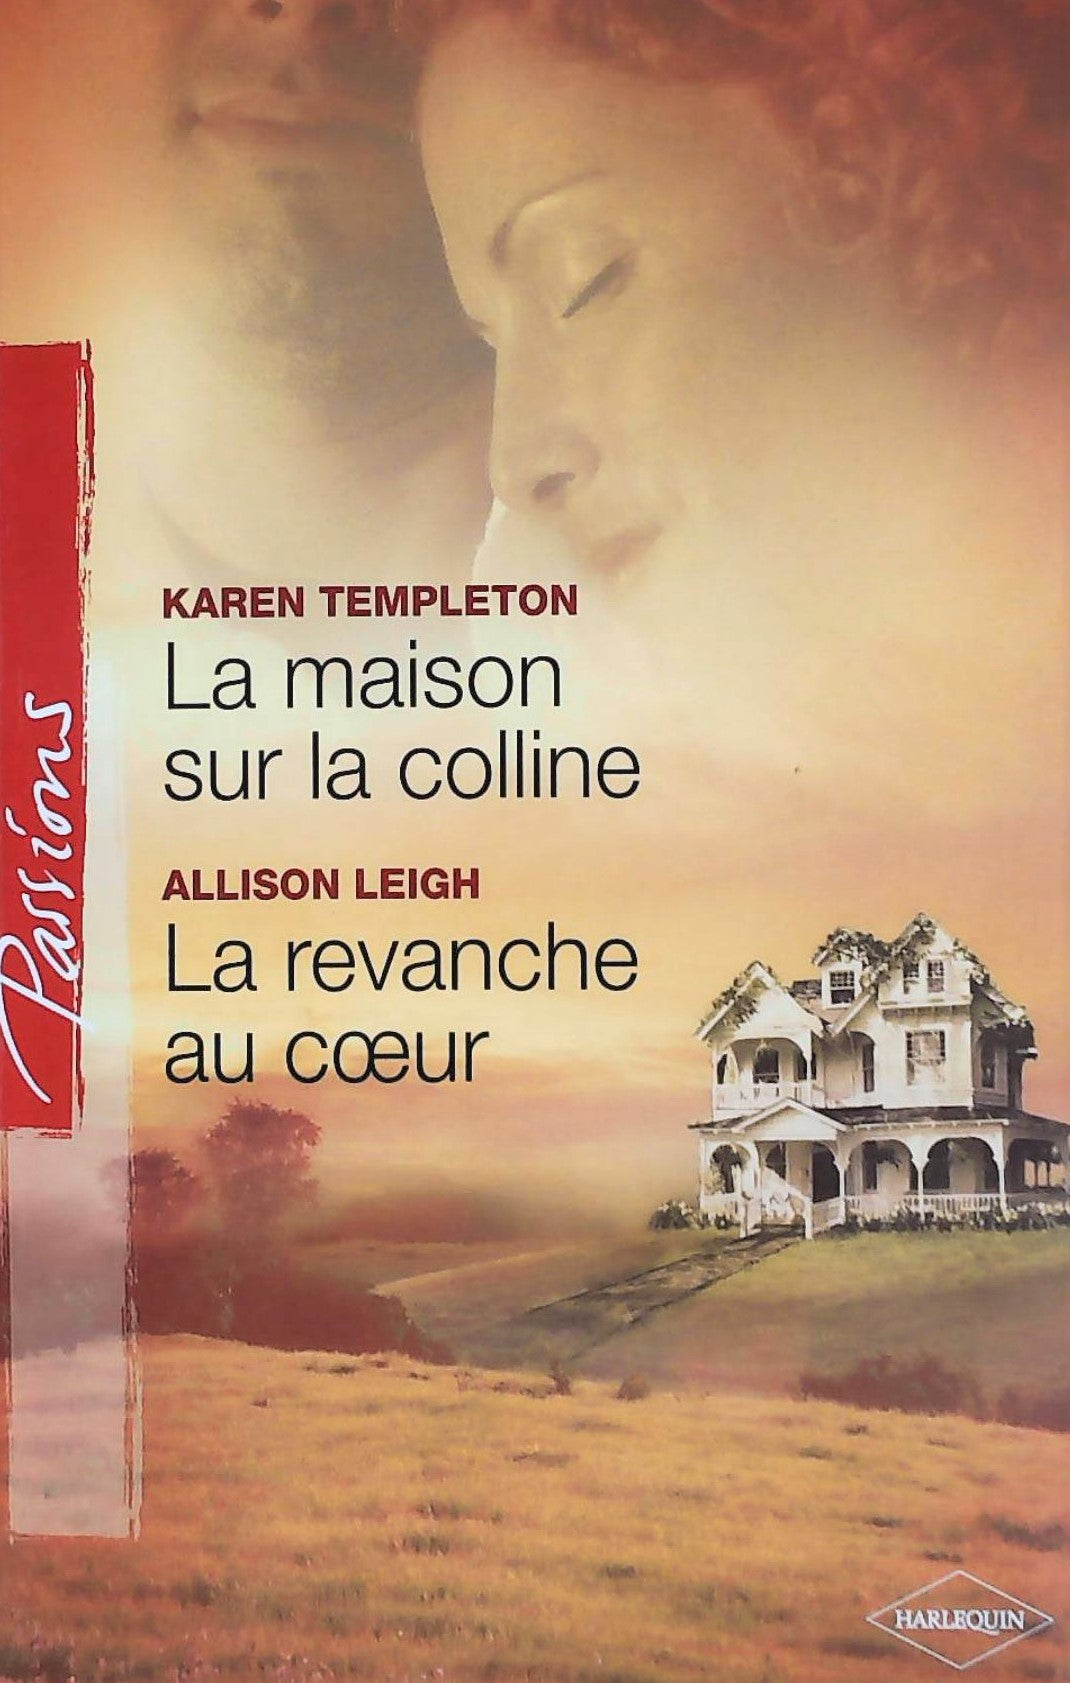 Livre ISBN 0373379366 Passions (Harlequin) : La maison sur la colline -suivi de- La revanche au coeur (Karen Templeton)